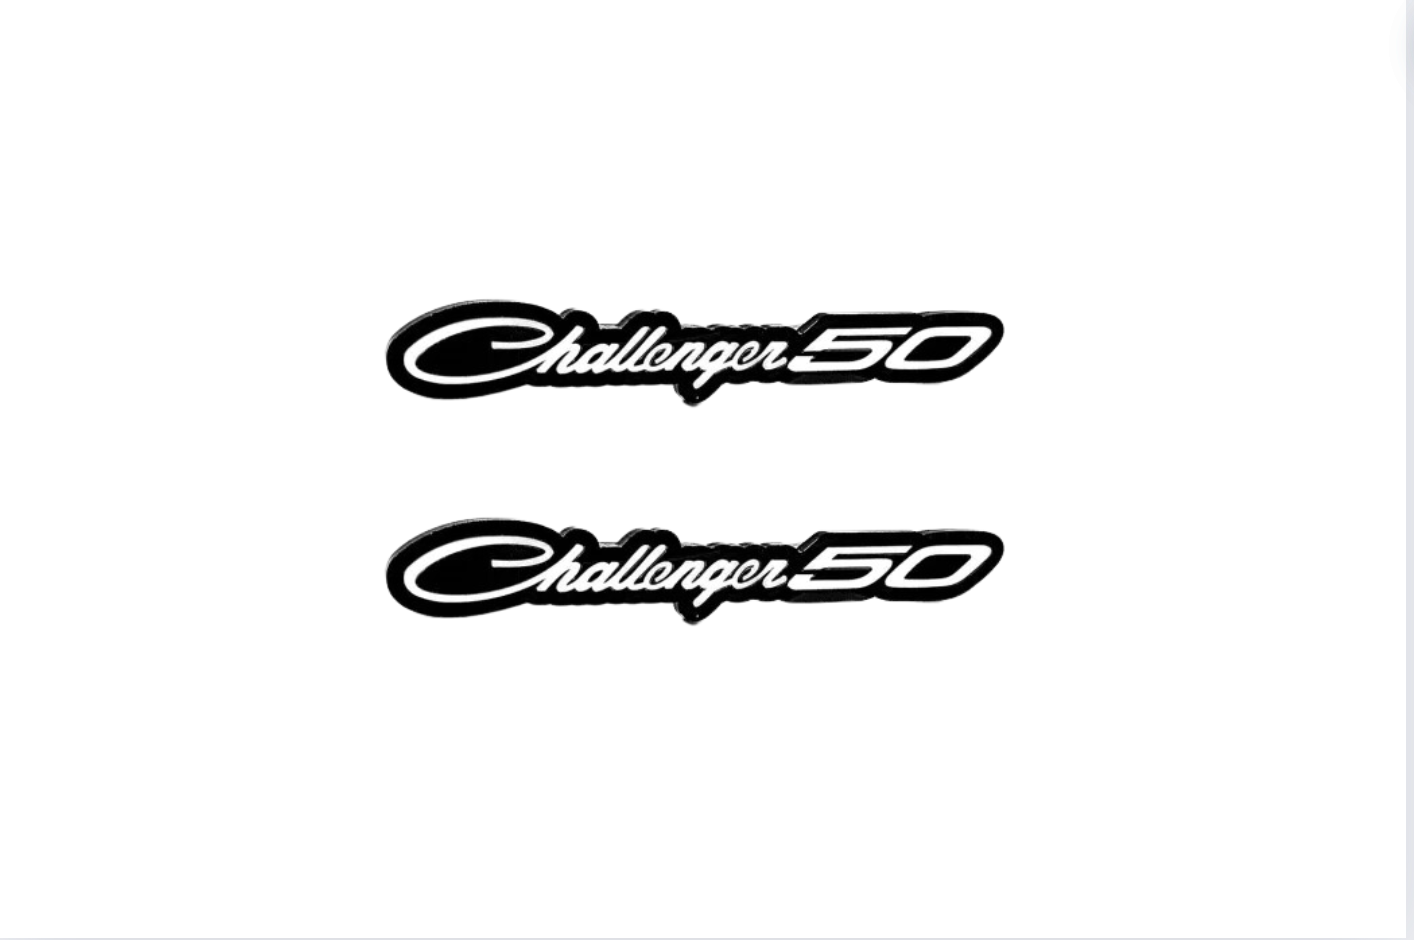 DODGE emblem for fenders with Dodge Challenger 50 logo